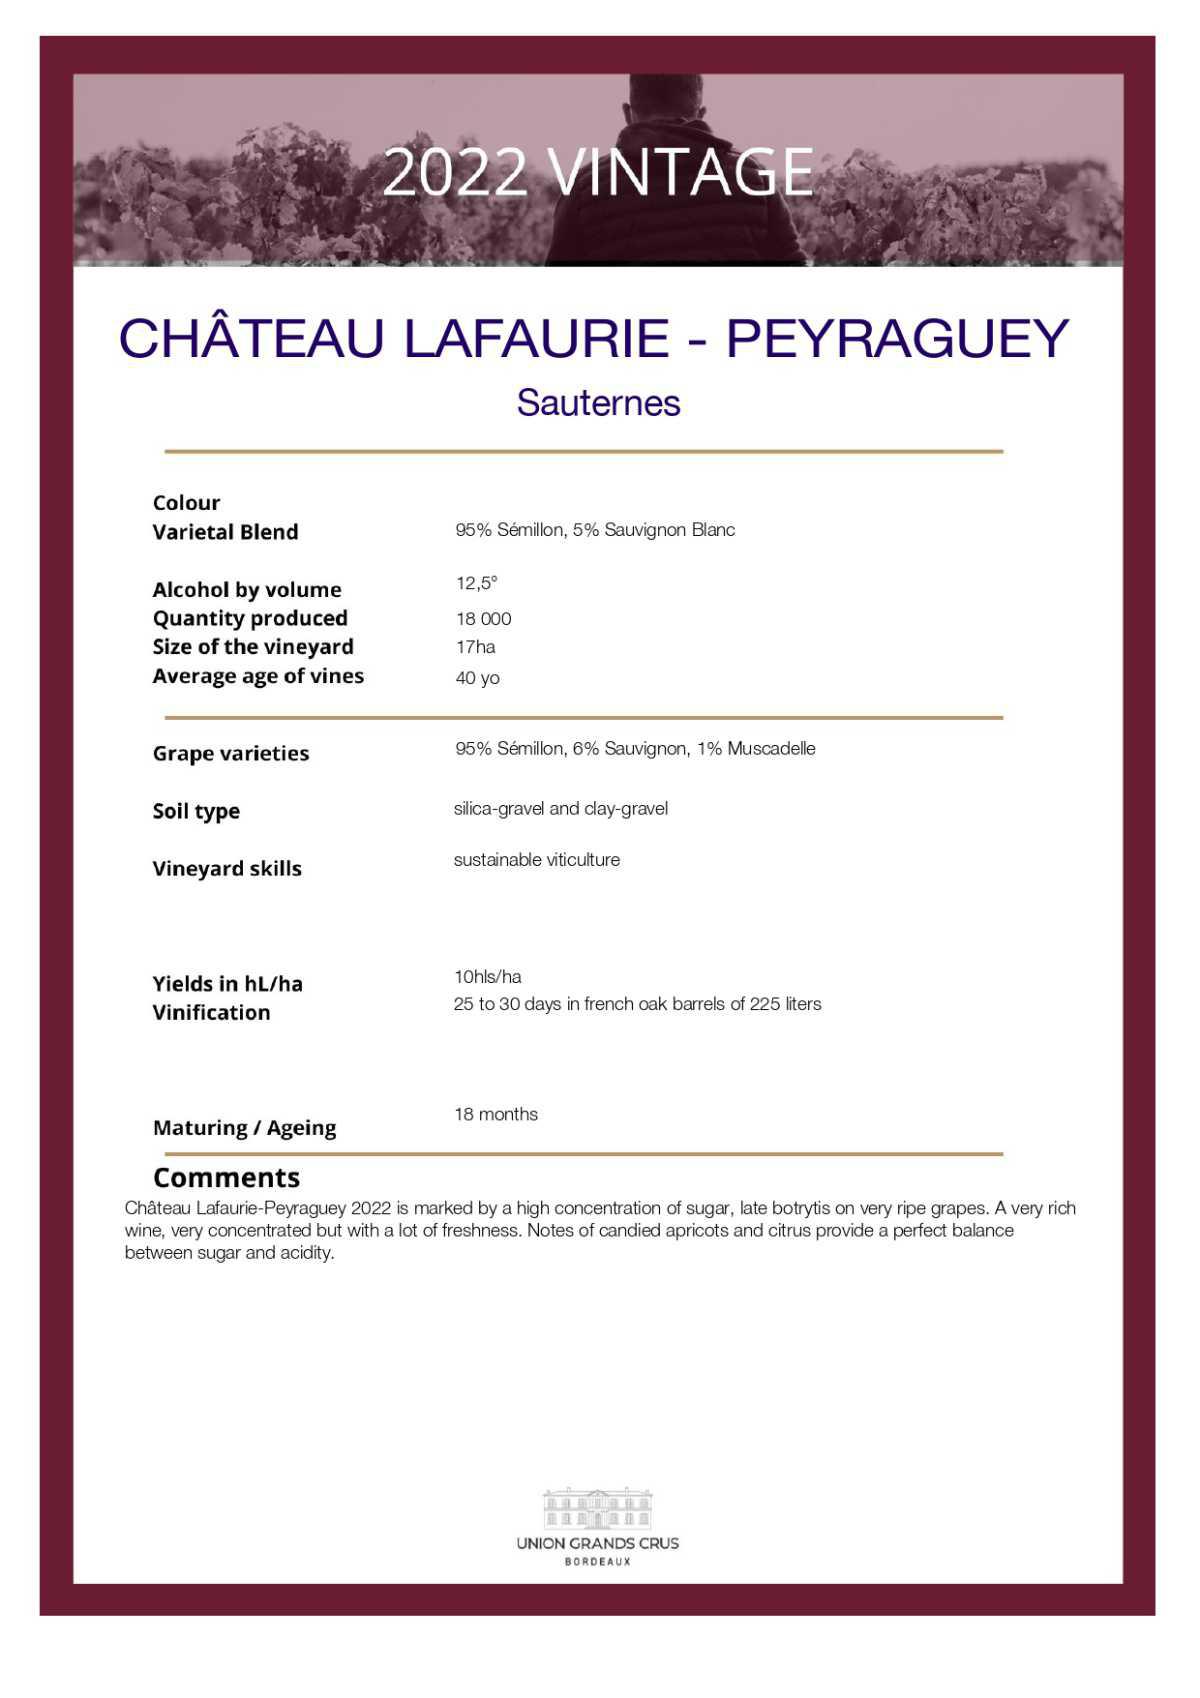  Château Lafaurie Peyraguey